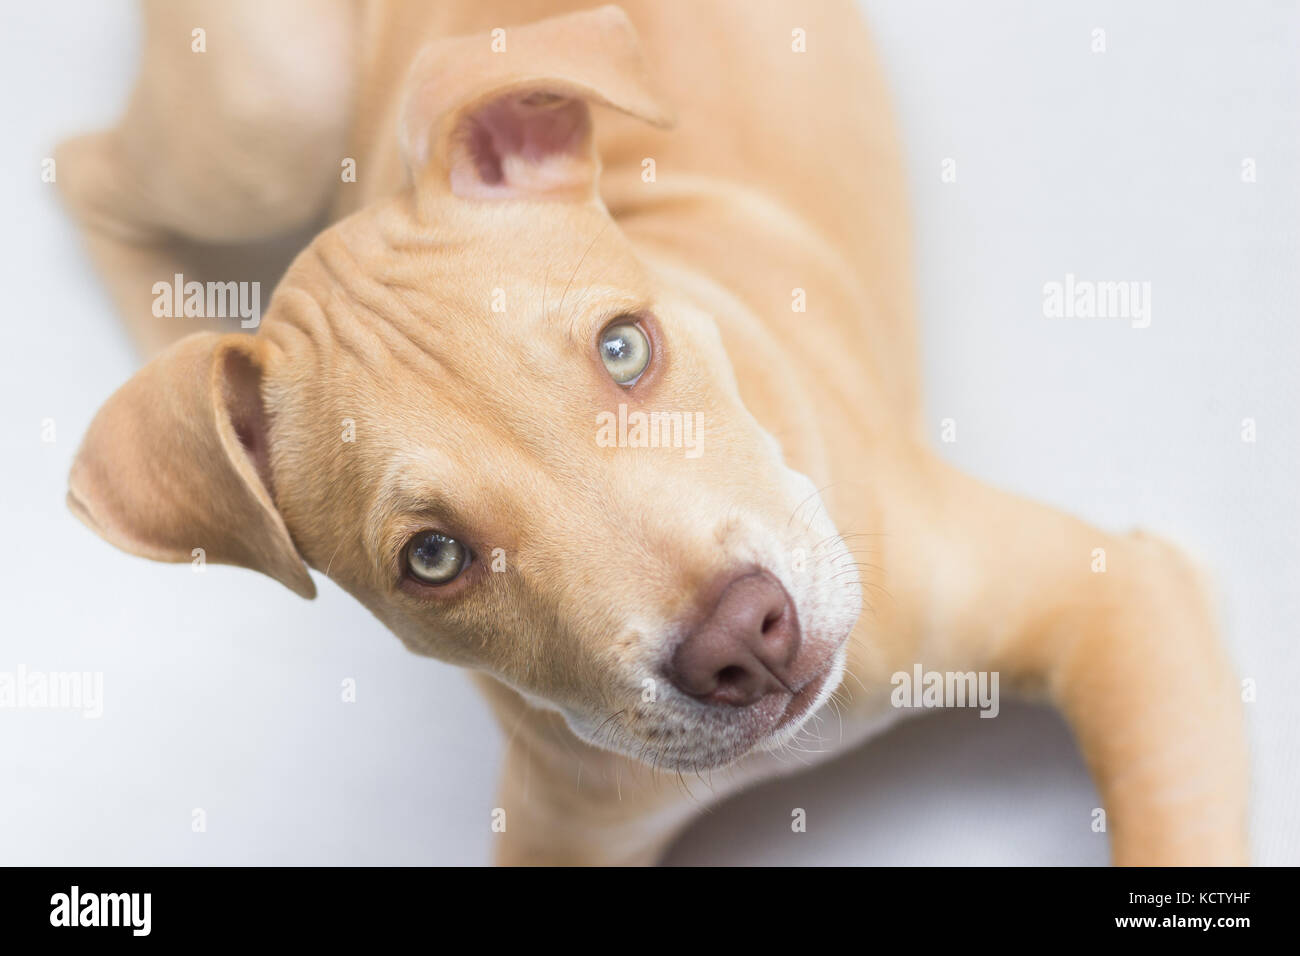 Chiot pit bull dog portrait visage Banque D'Images